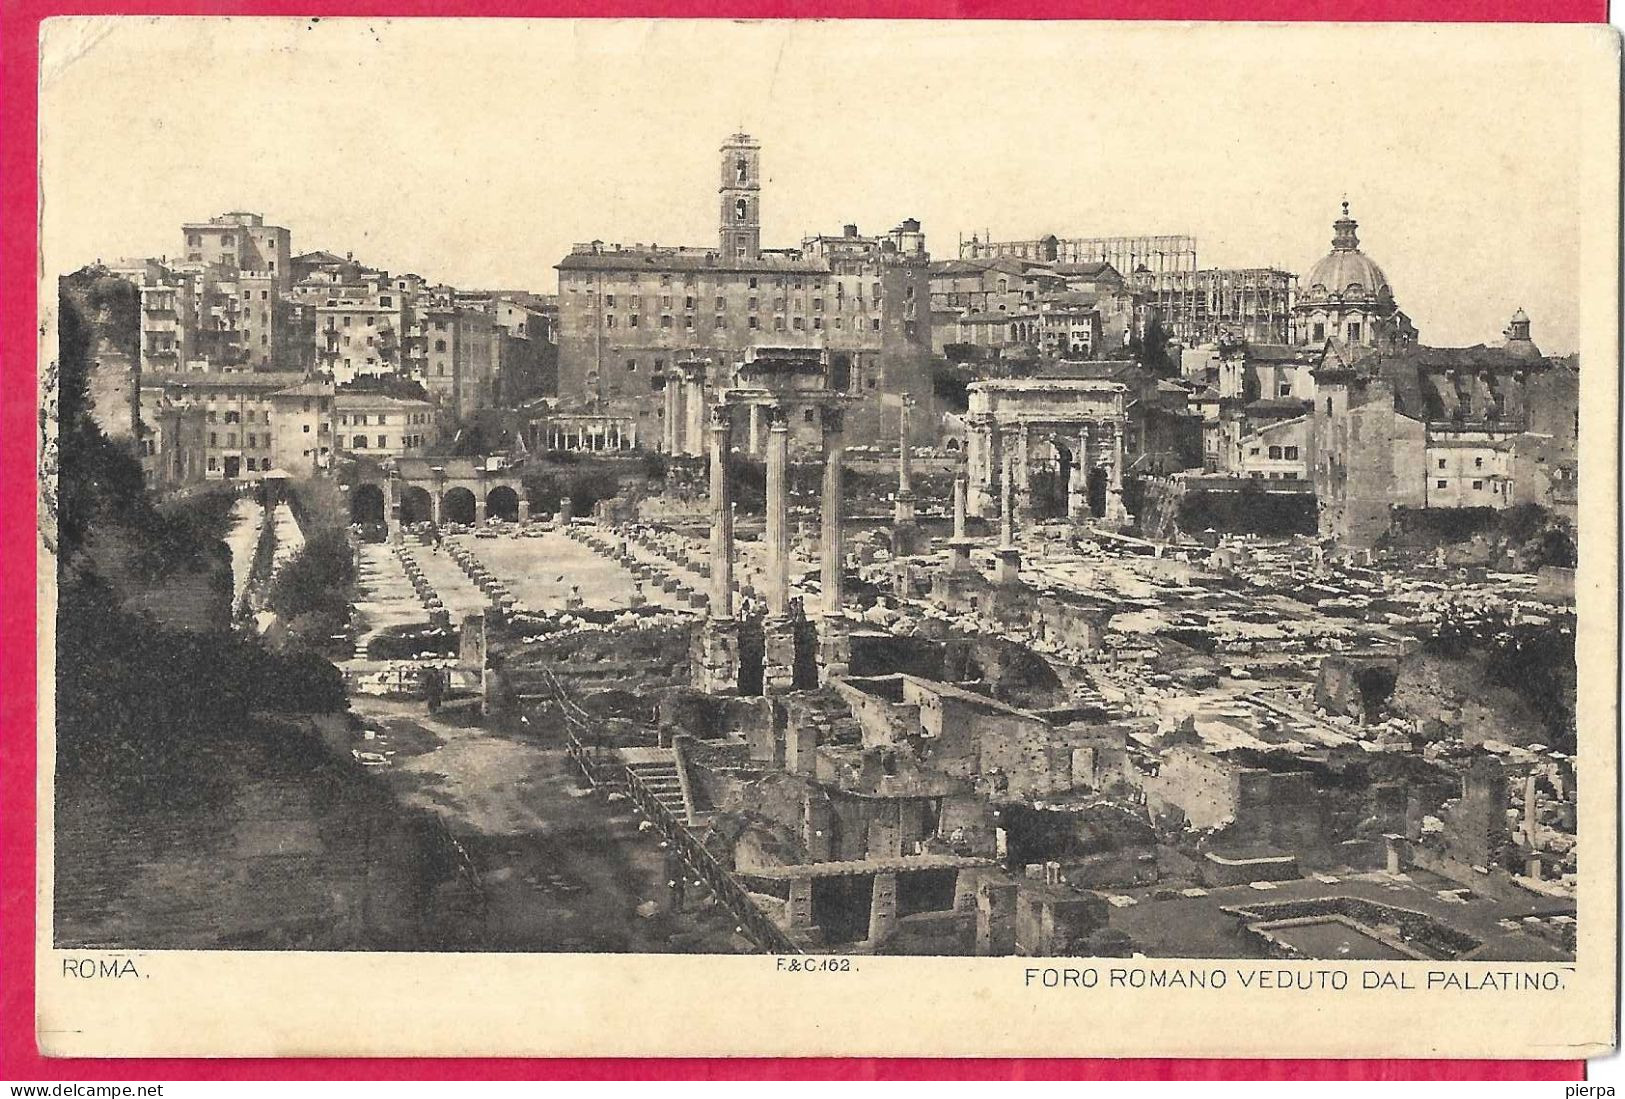 ROMA - FORO ROMANO - FORMATO PICCOLO - VIAGGIATA 1895 PER LA FRANCIA - Otros Monumentos Y Edificios